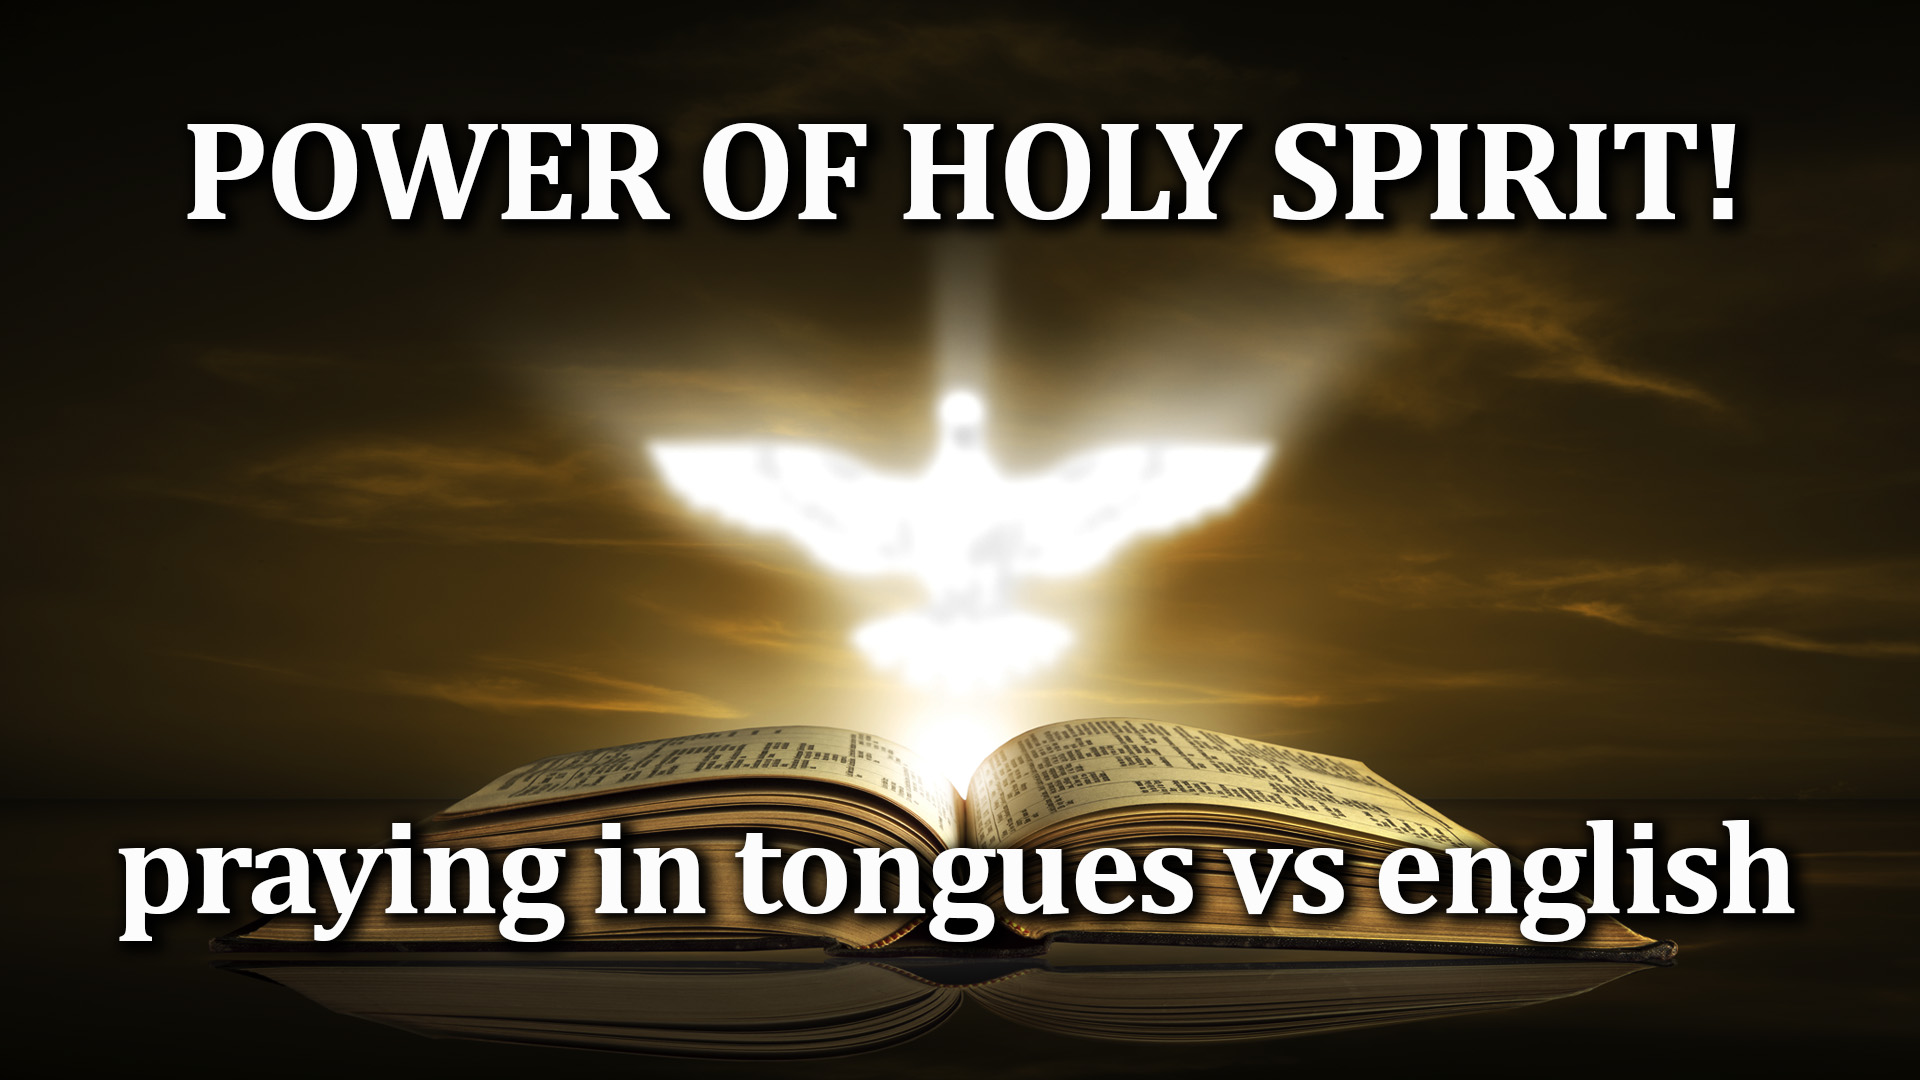 11-23-21 Power of Holy Spirit praying in tongues vs english